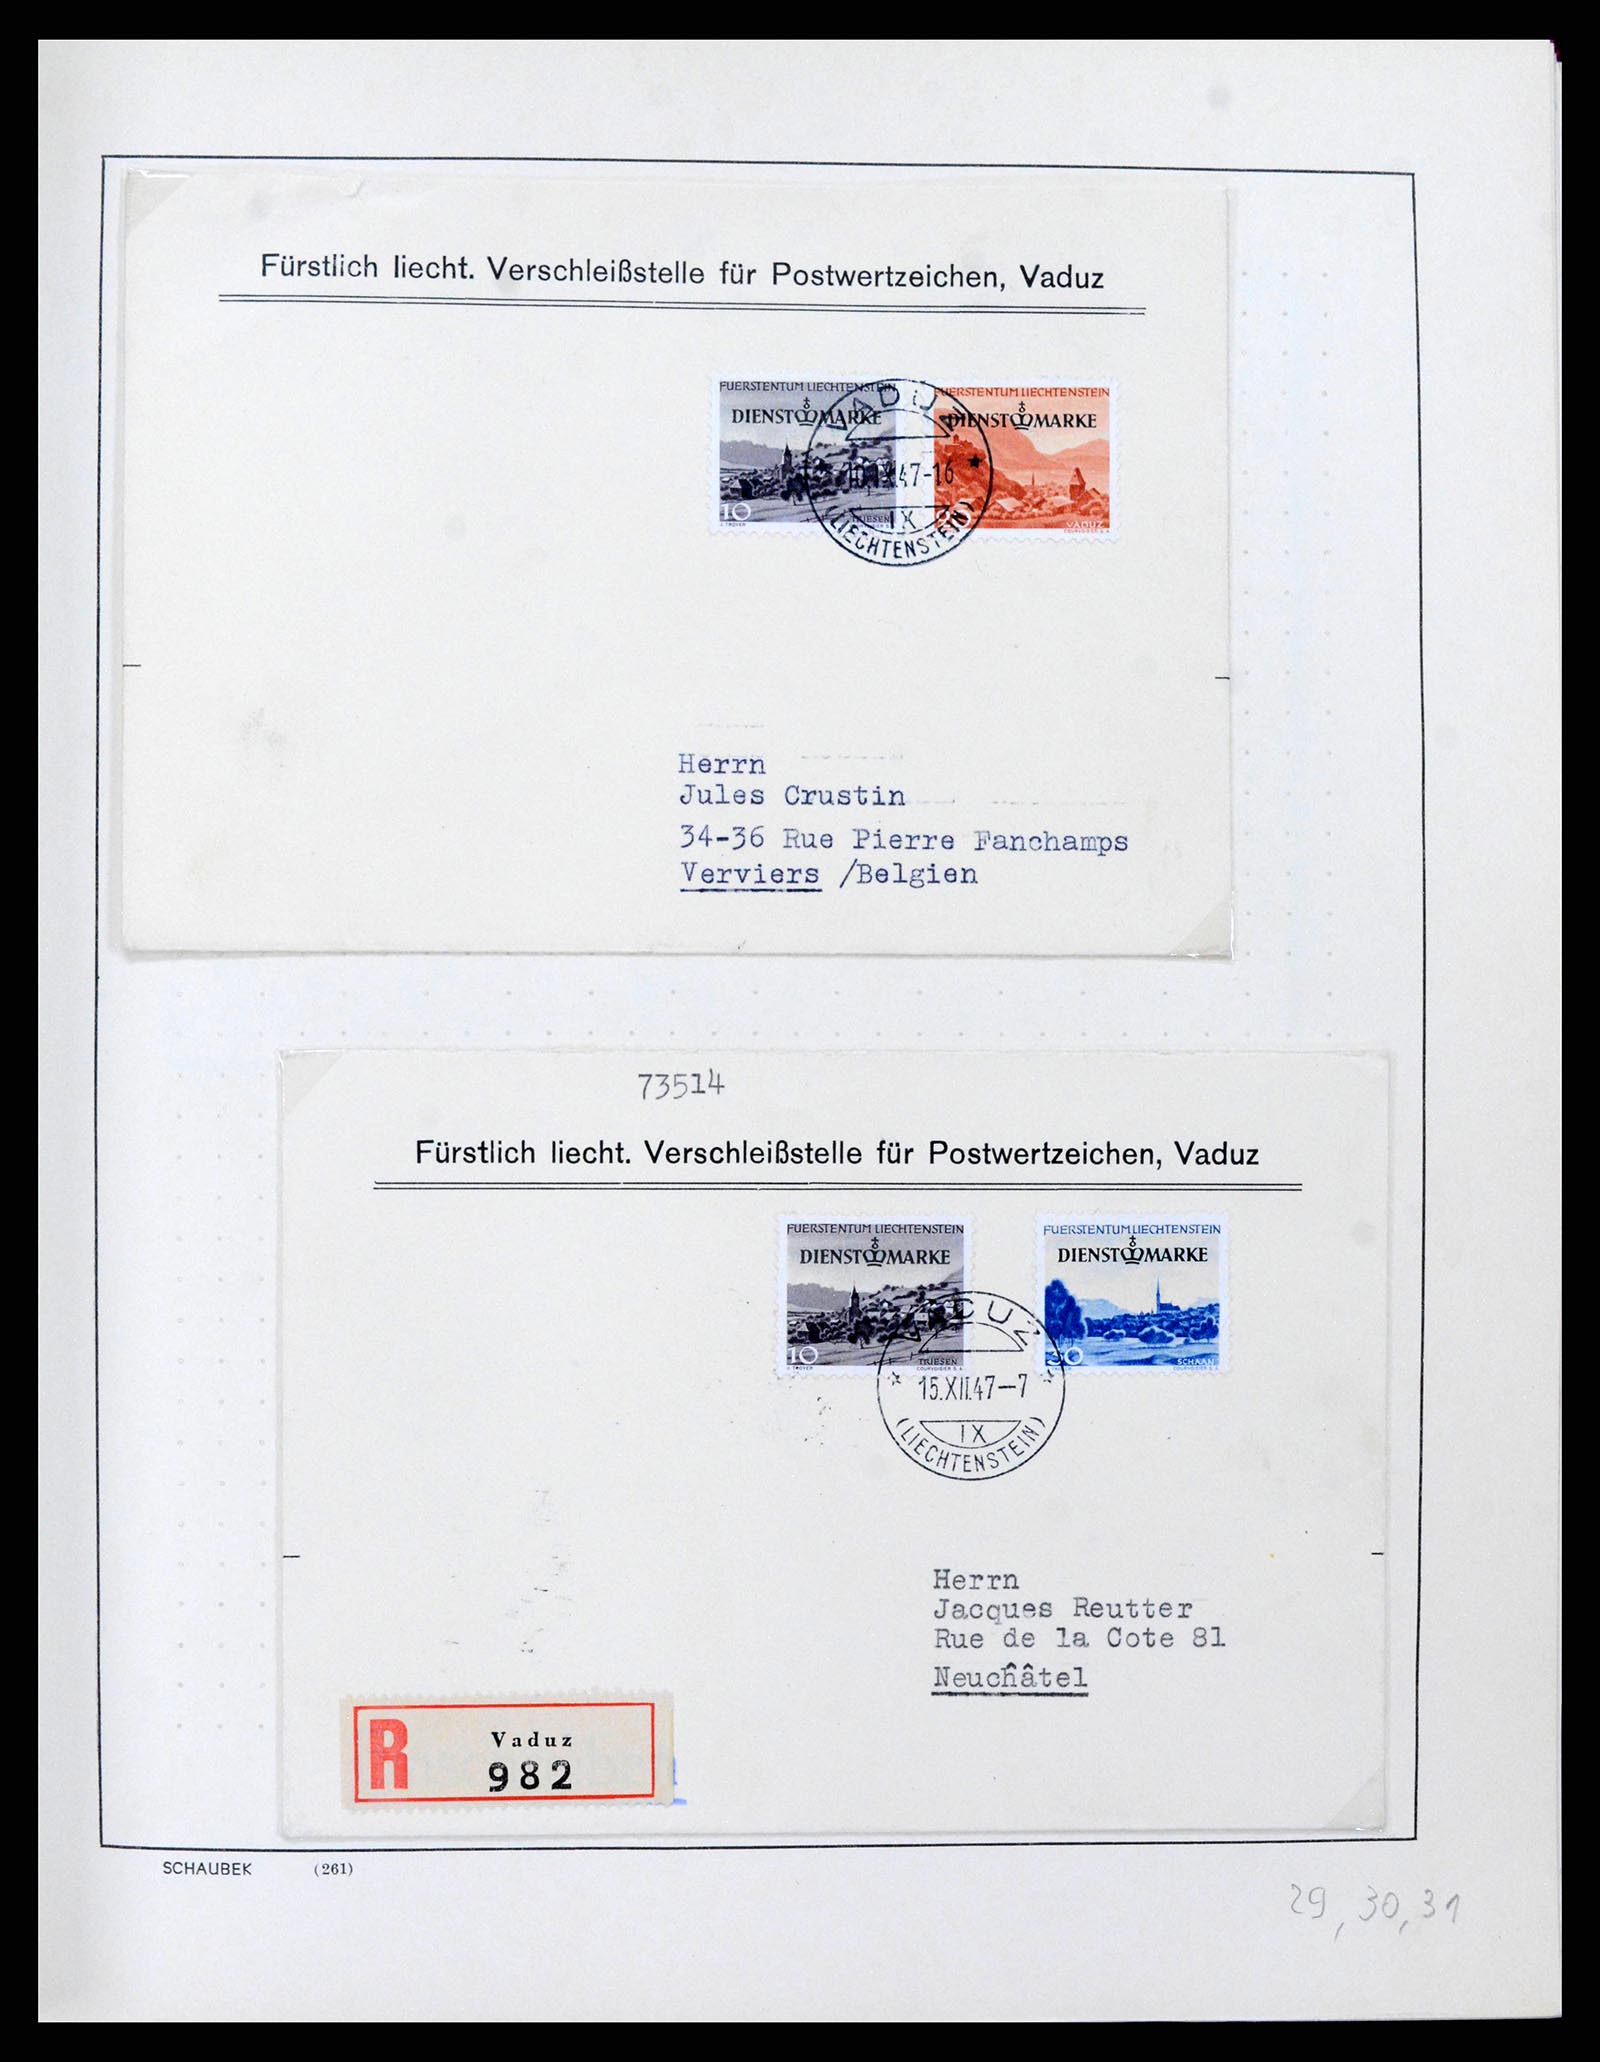 38204 0033 - Stamp collection 38204 Liechtenstein service covers 1932-1989.